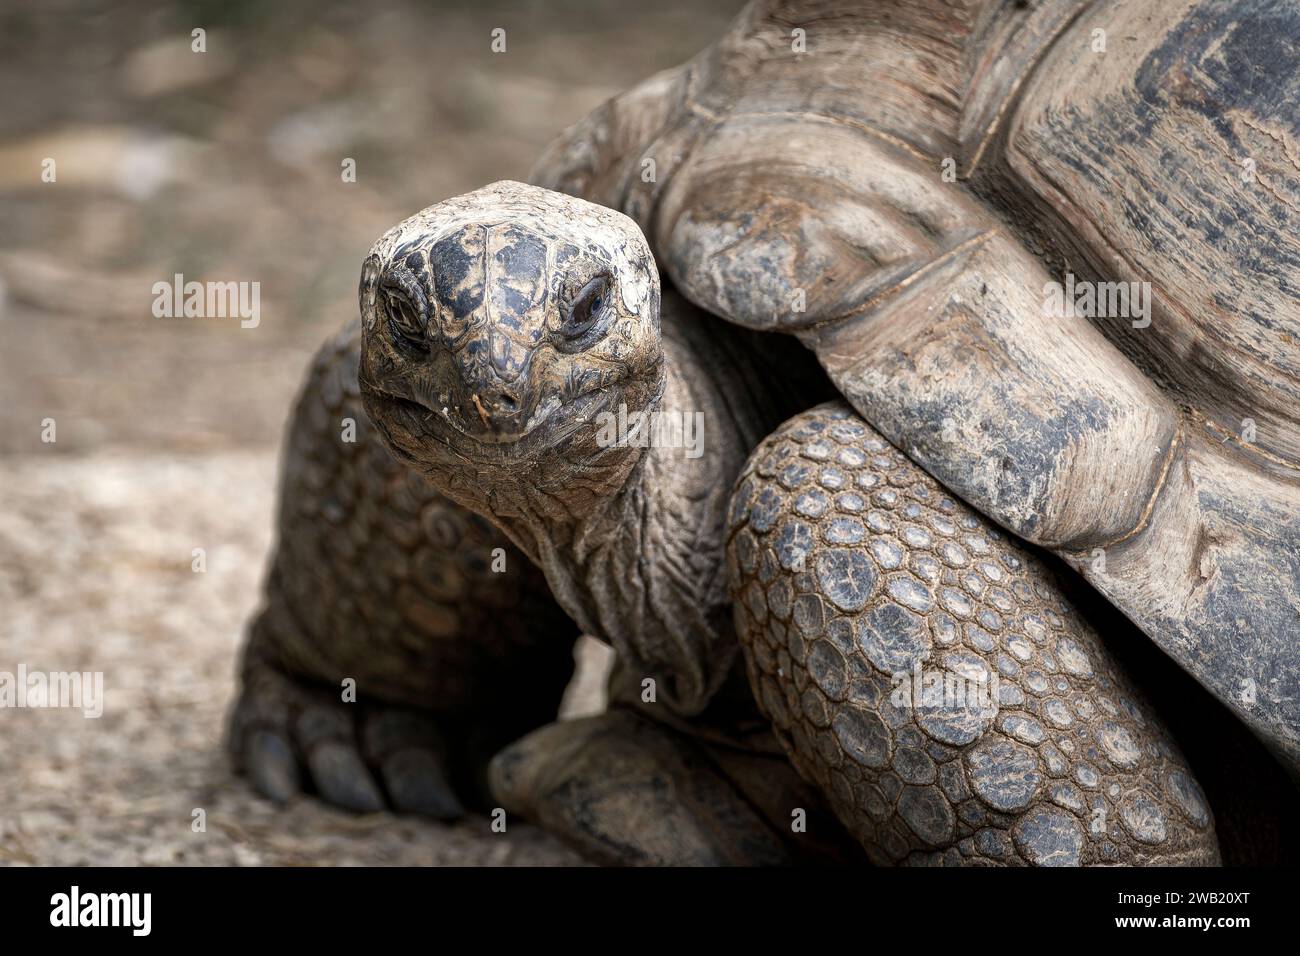 portrait de tortue géante qui regarde Stock Photo